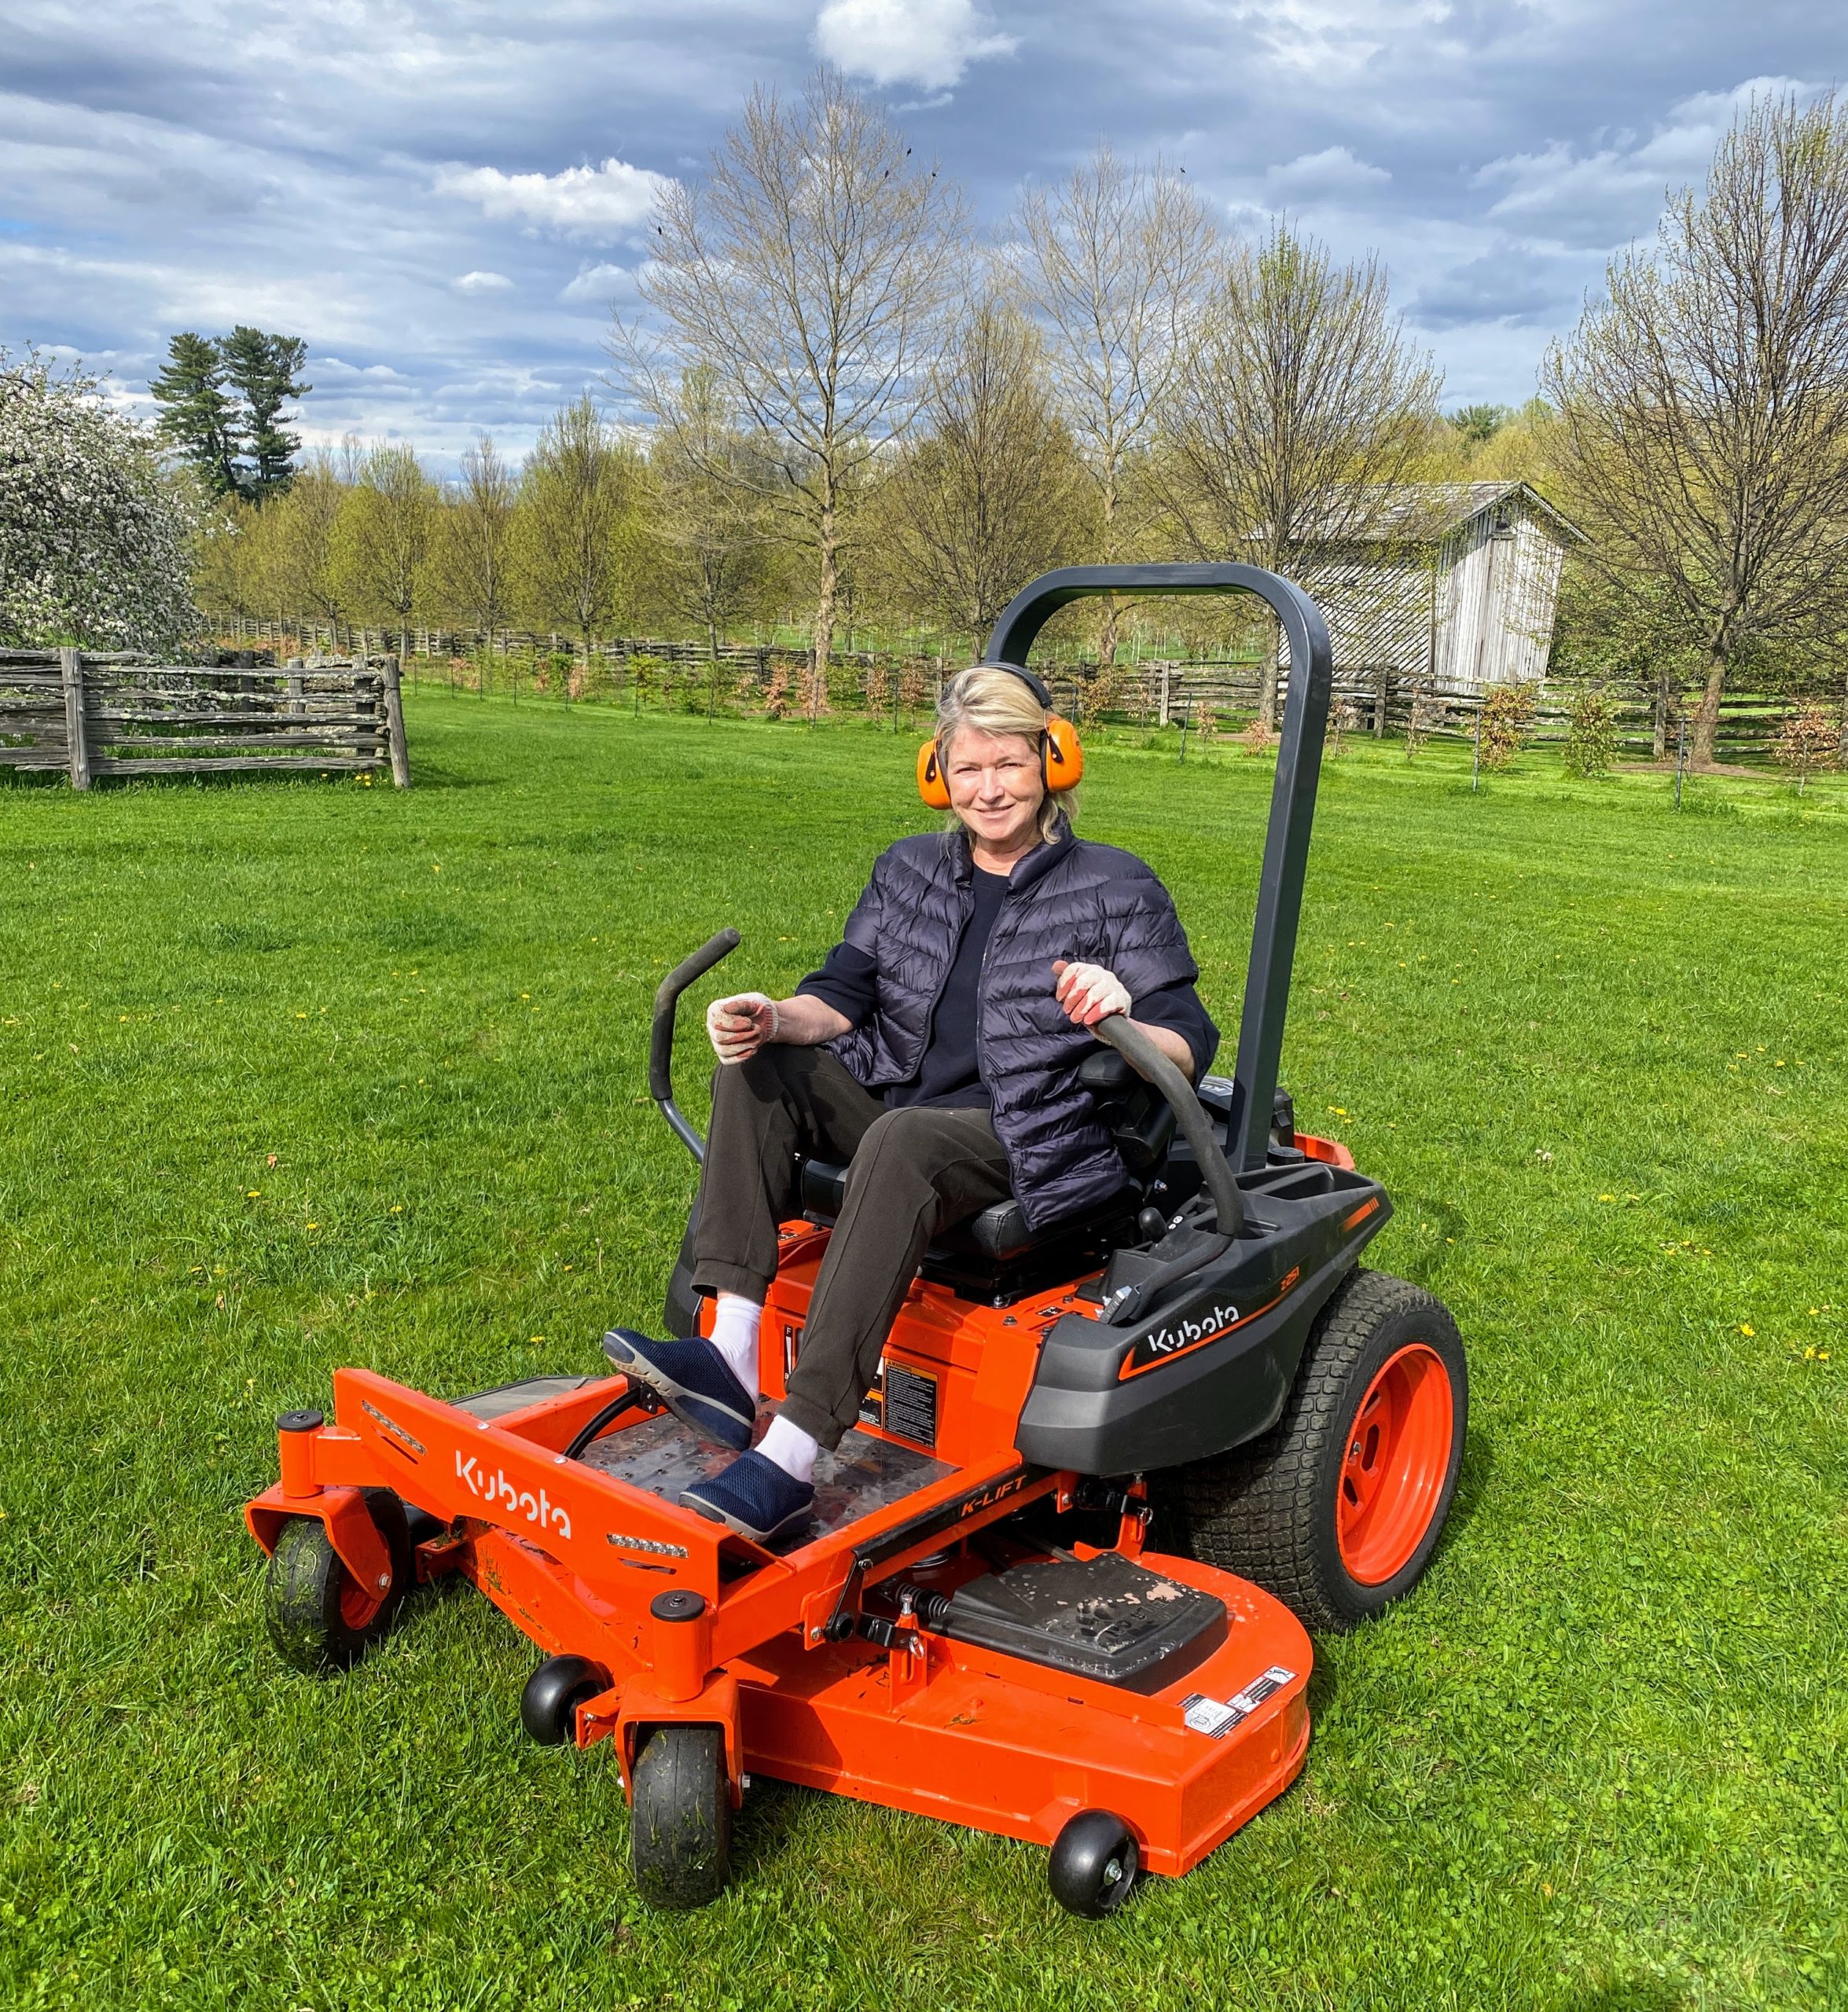 Using Kubota Equipment Around the Farm - The Martha Stewart Blog